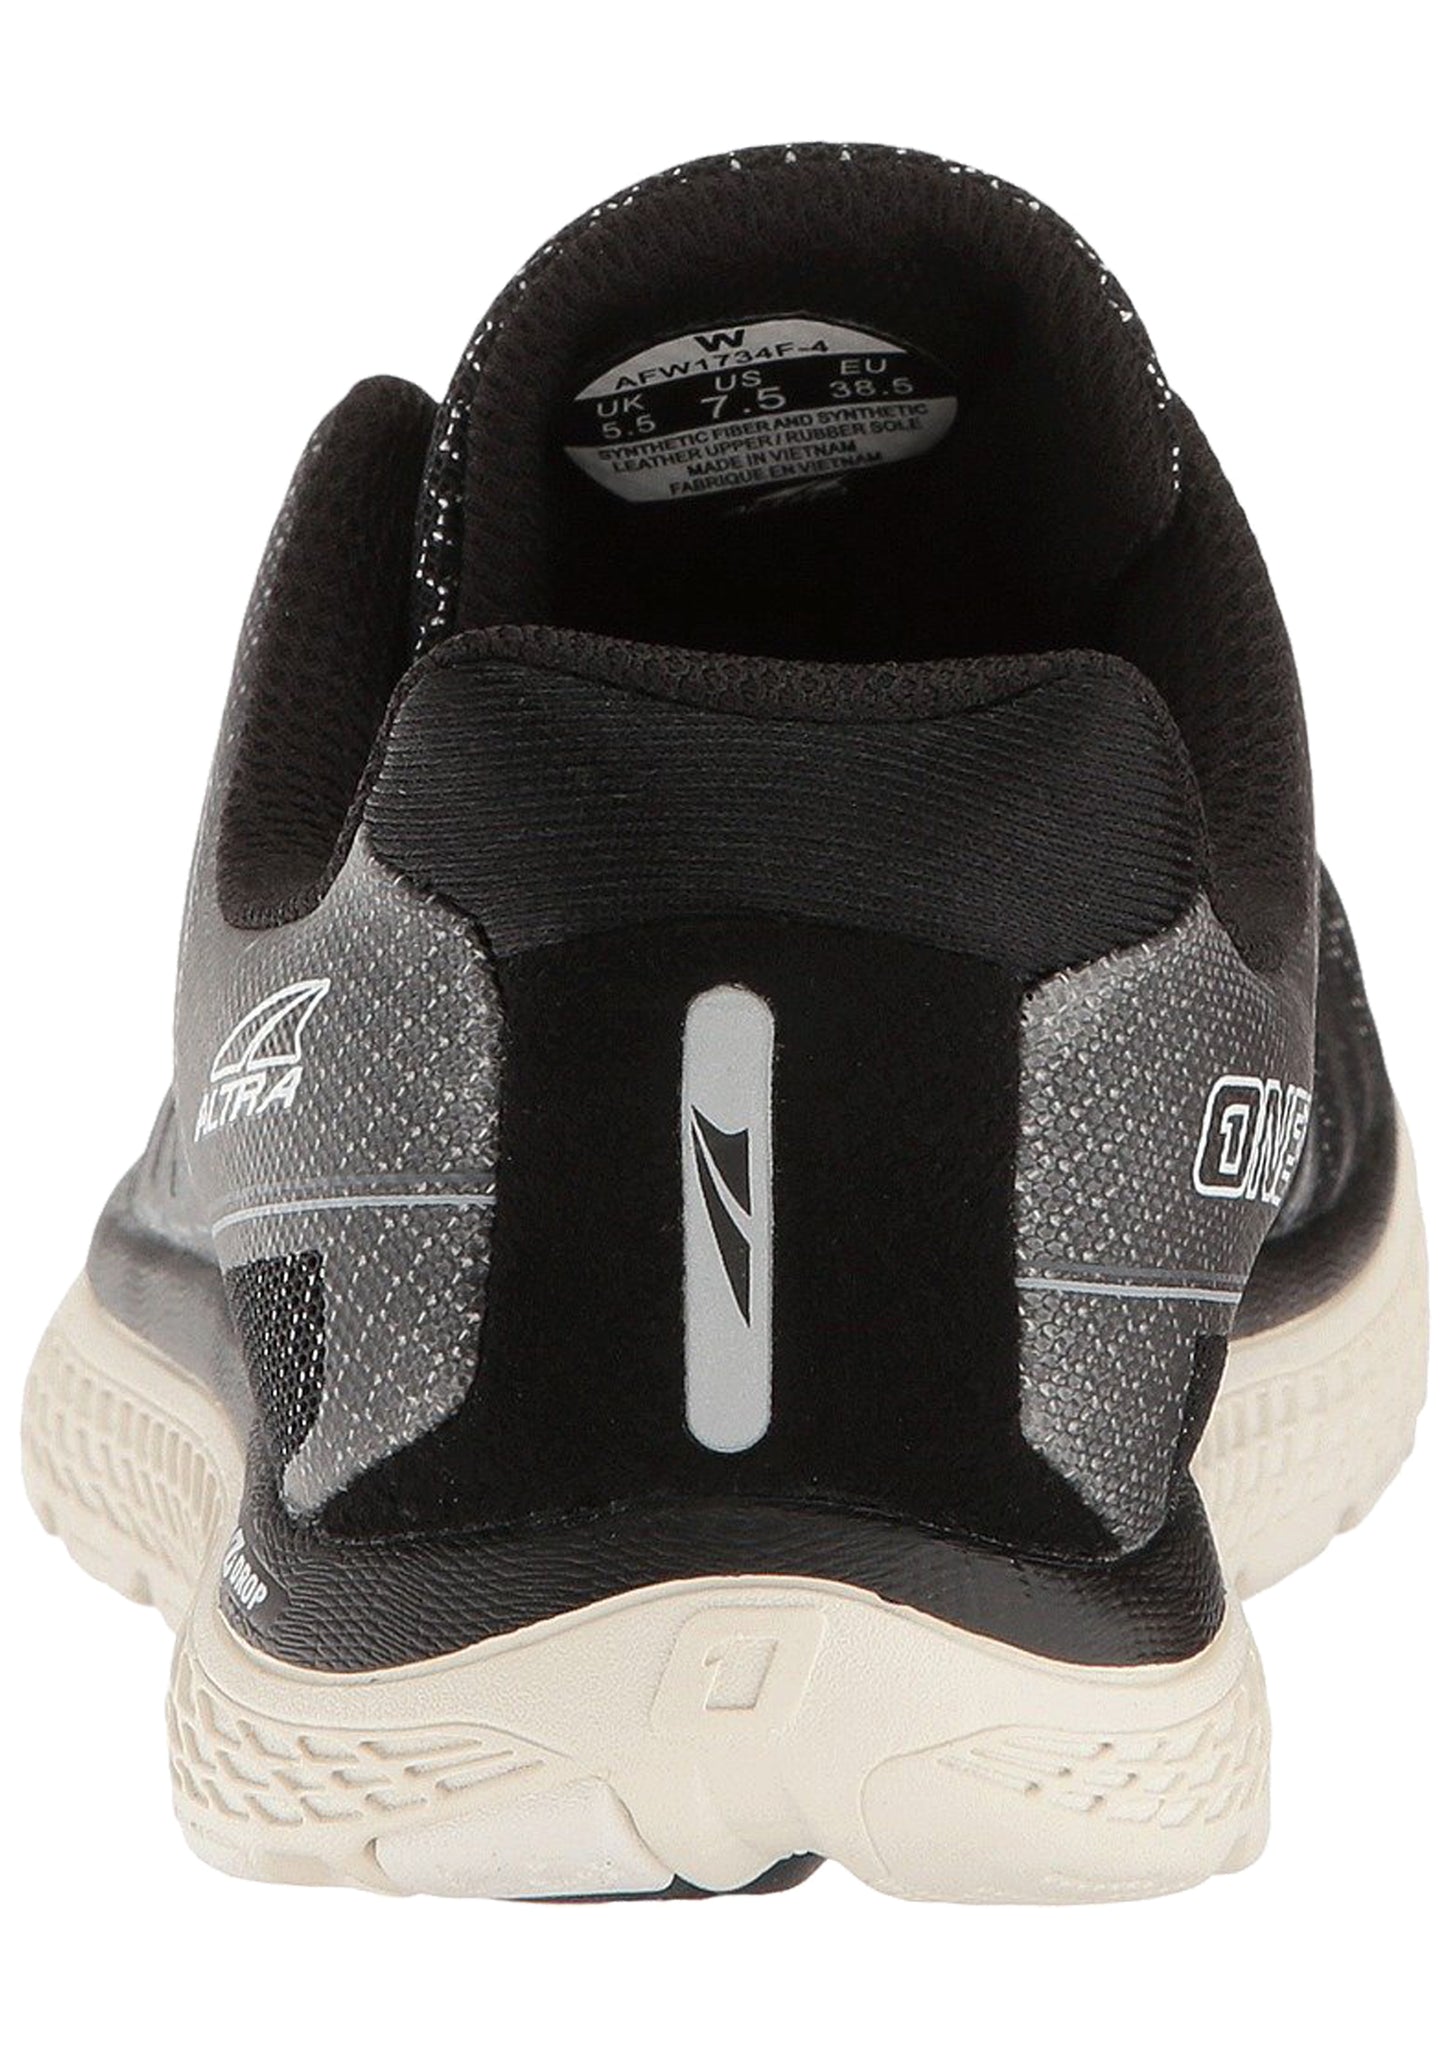 
                  
                    Back of  black Altra Men's One V3 Zero Drop Foot Shape Running ShoesAltra Men's One V3 Zero Drop Foot Shape Running Shoes
                  
                